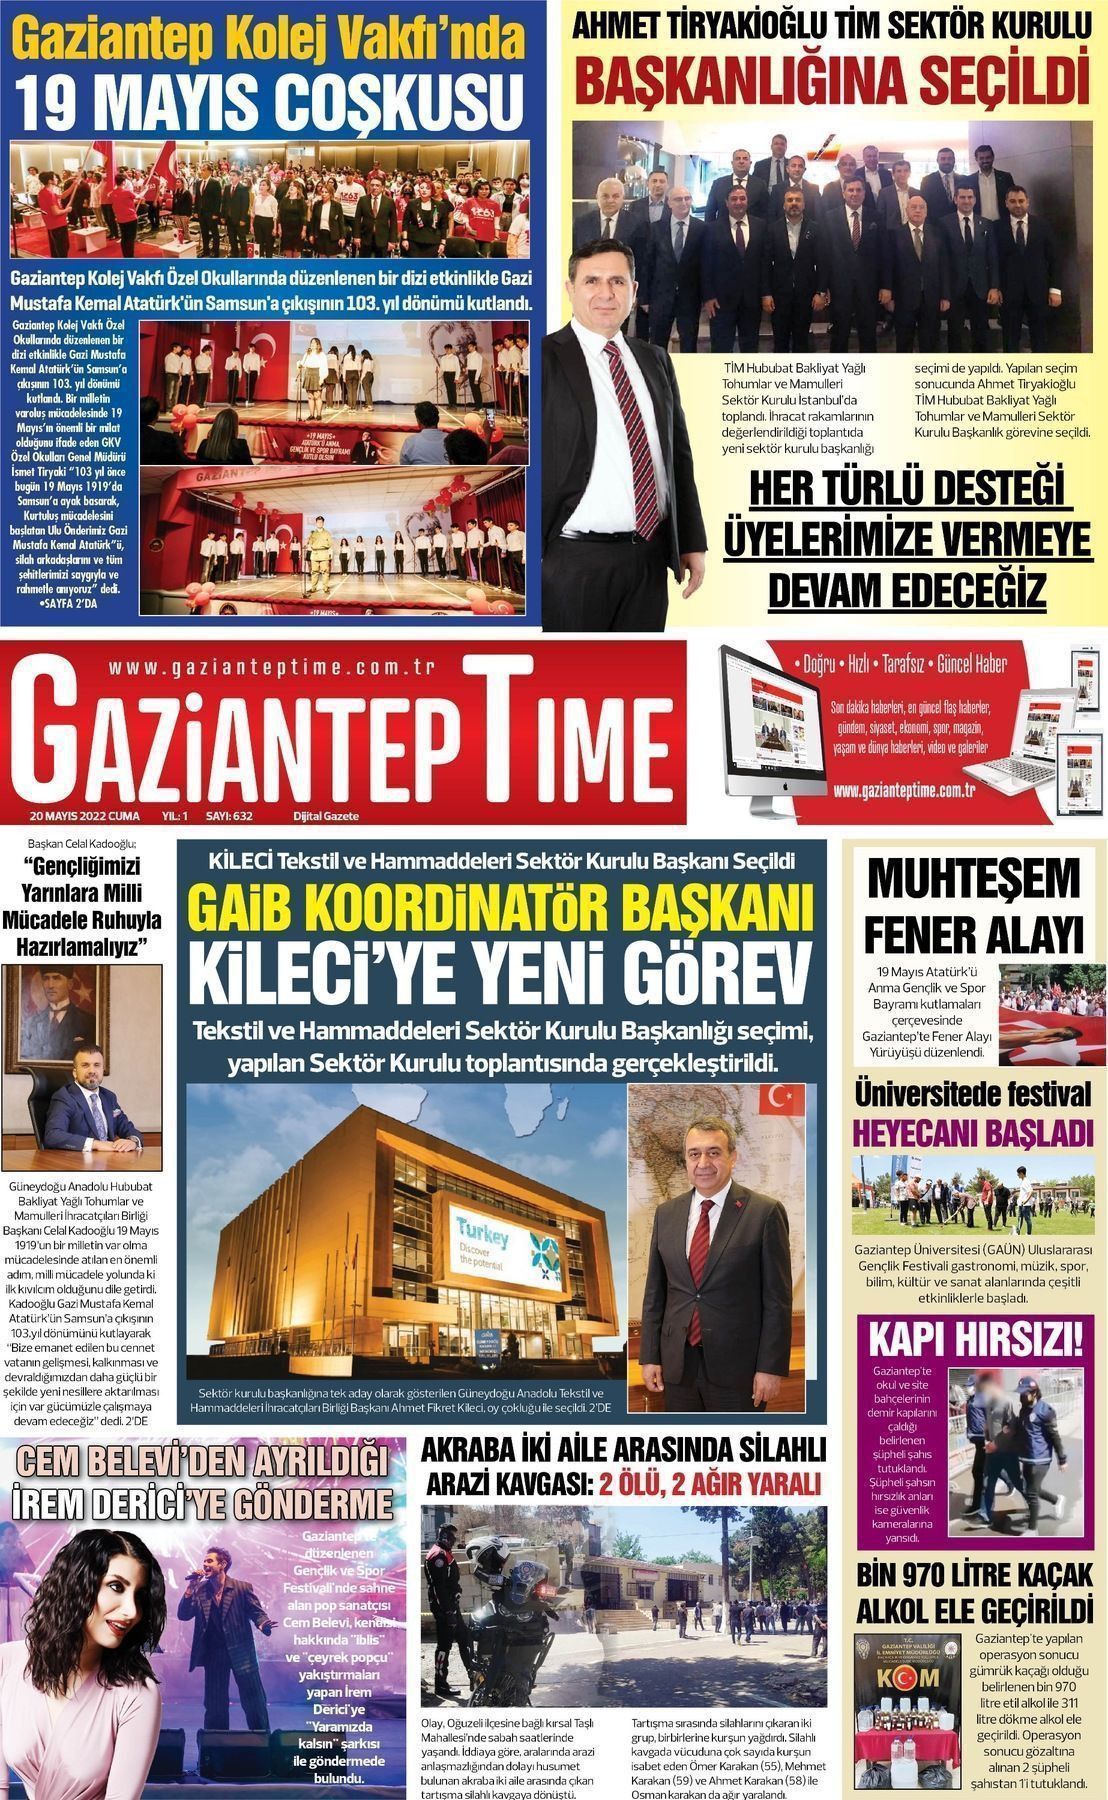 22 Mayıs 2022 Gaziantep Time Gazete Manşeti